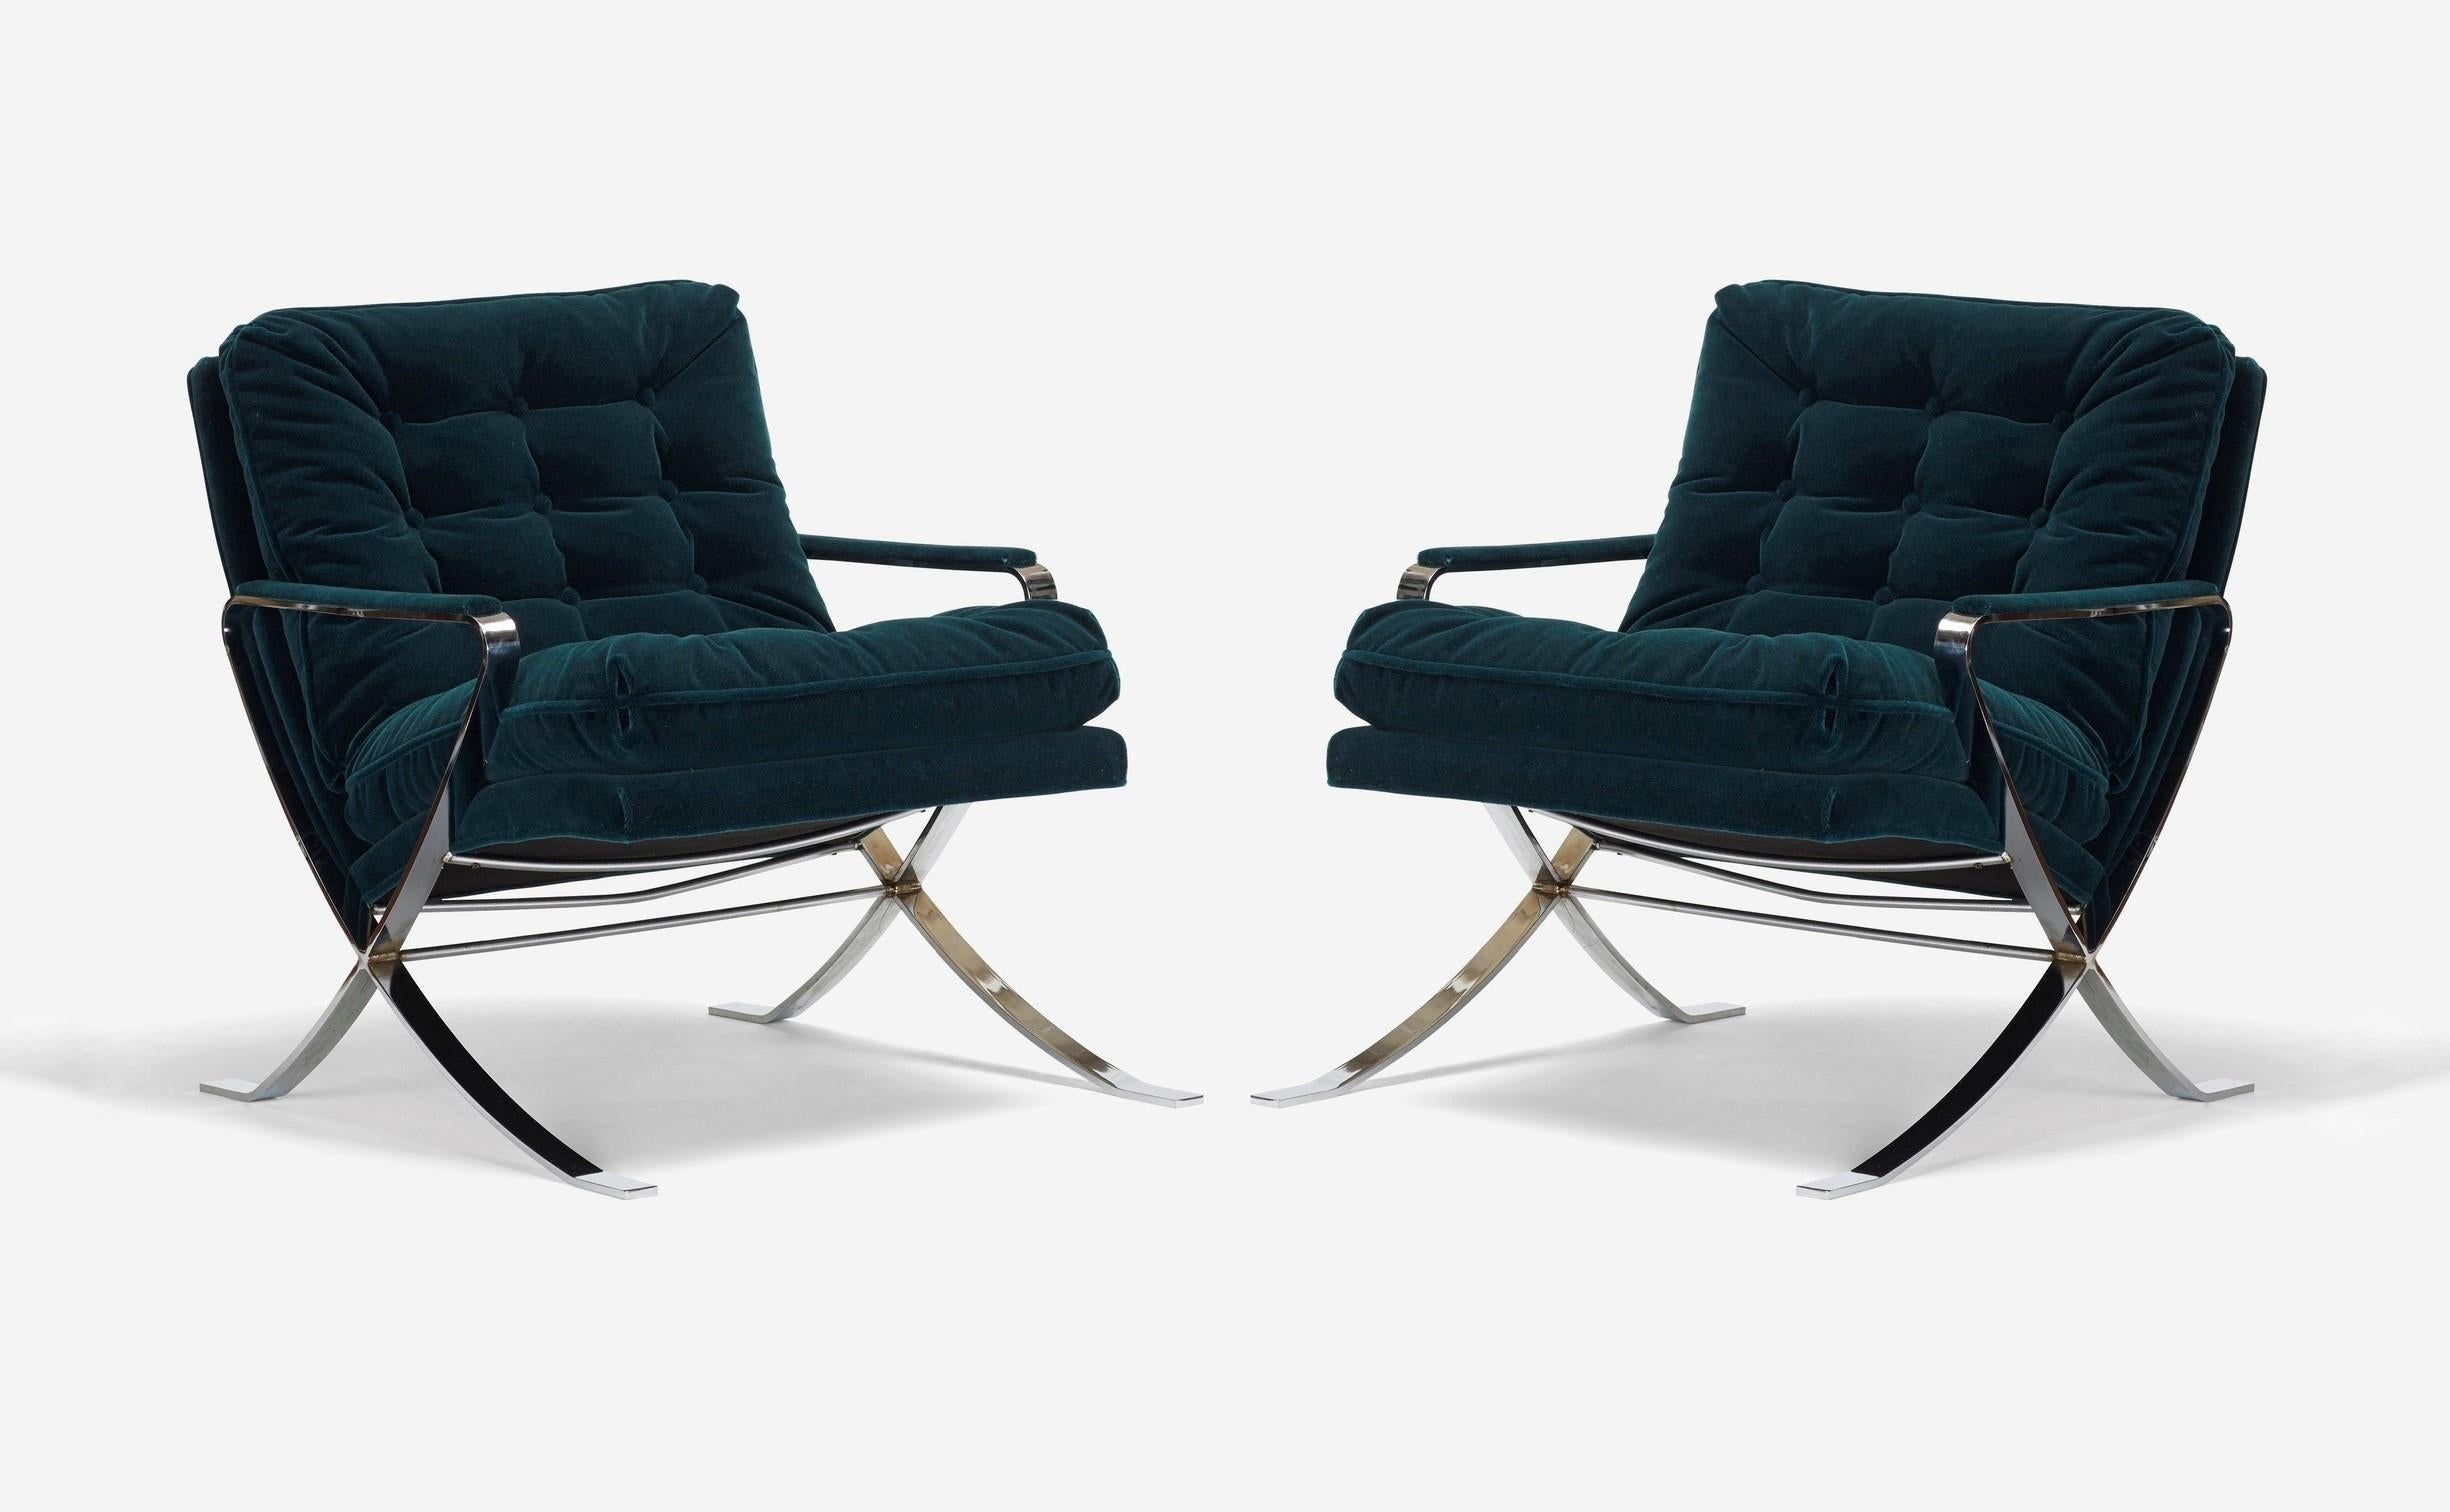 Elegantes Paar neu gepolsterter Lounge-Sessel aus grünem Plüschsamt und verchromtem Flachstahl von Flair Furniture, inspiriert von den Stuhldesigns von Milo Baughman und Mies Van der Rohe (Barcelona Chair). Flair ist ein weniger bekanntes